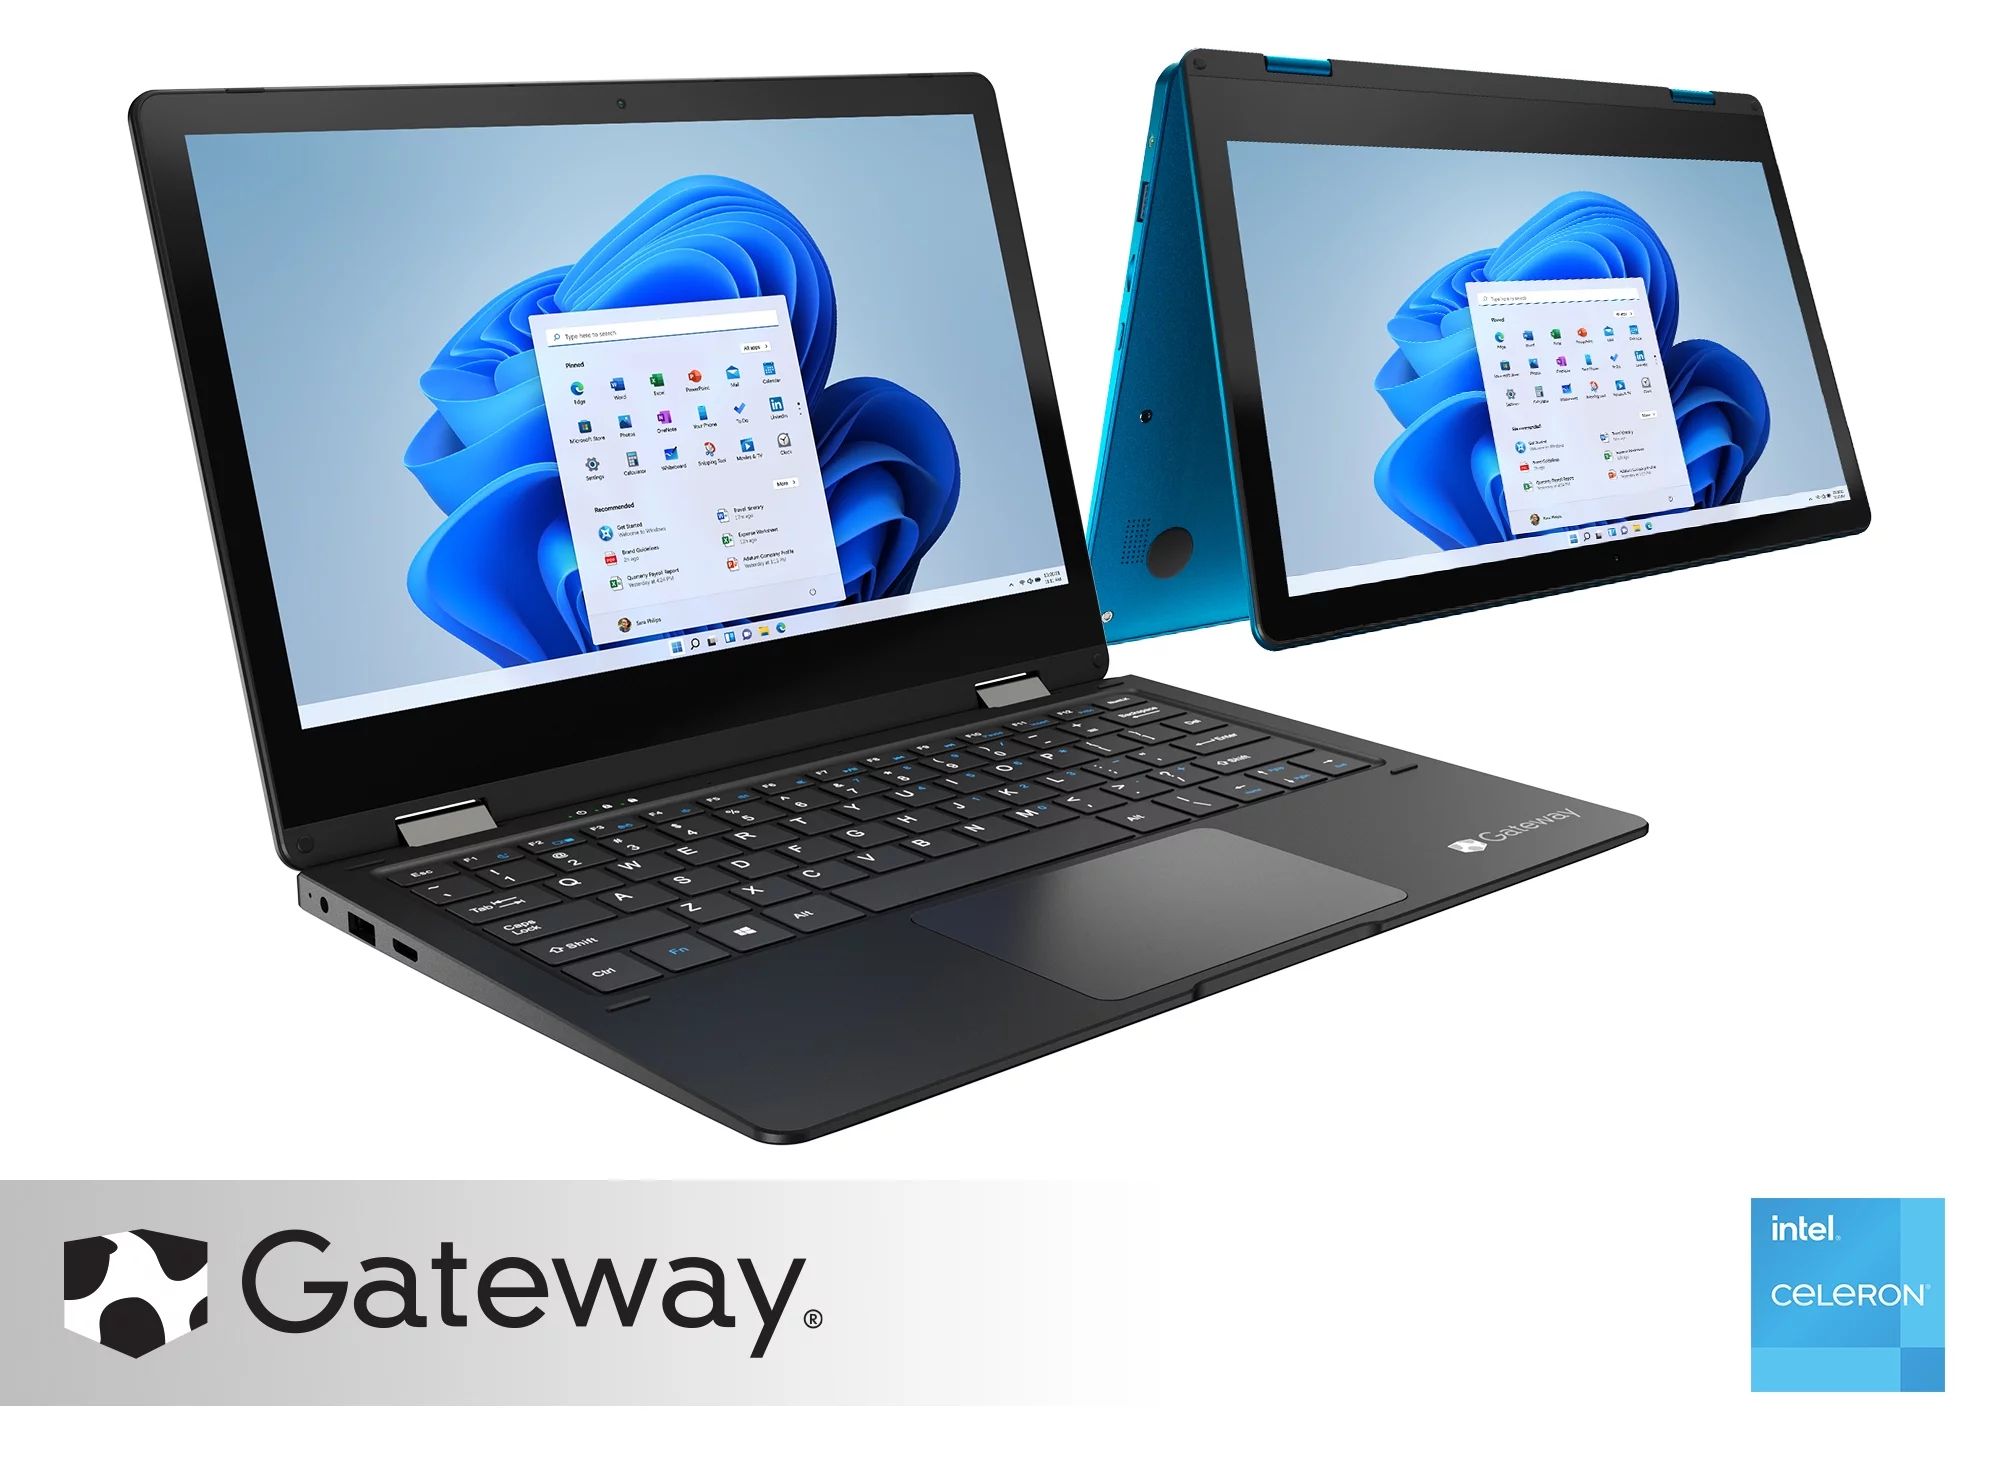 Gateway Notebook 11.6" Touchscreen 2-in-1s Laptop, Intel Celeron N4020, 4GB RAM, 64GB HD, Windows... | Walmart (US)